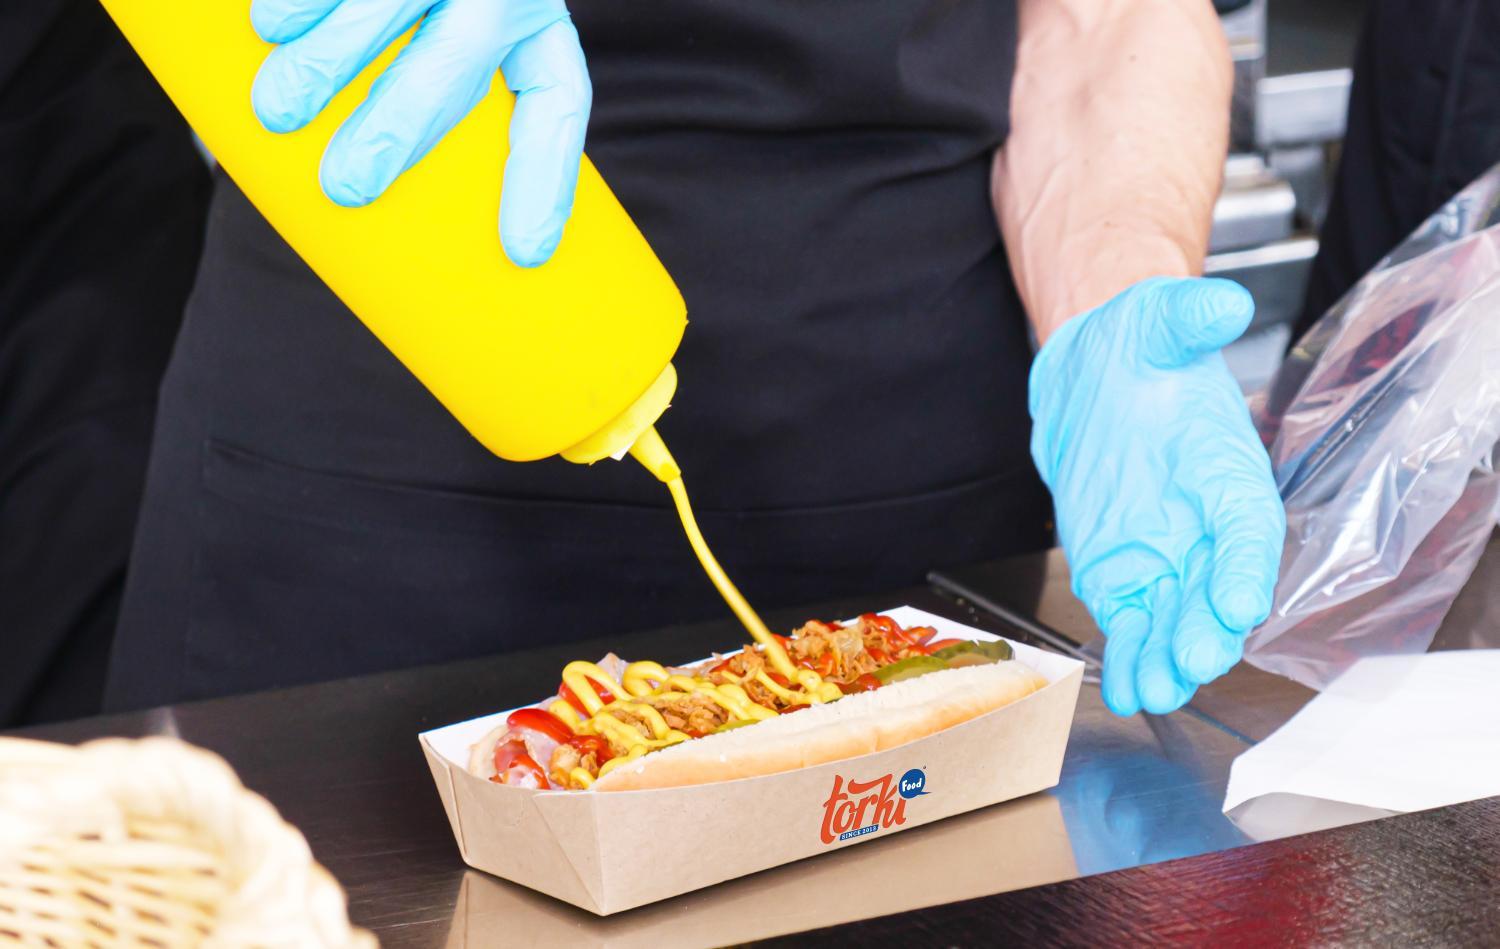 Kinh doanh hot dog với nguồn vốn ít, linh hoạt địa điểm bán